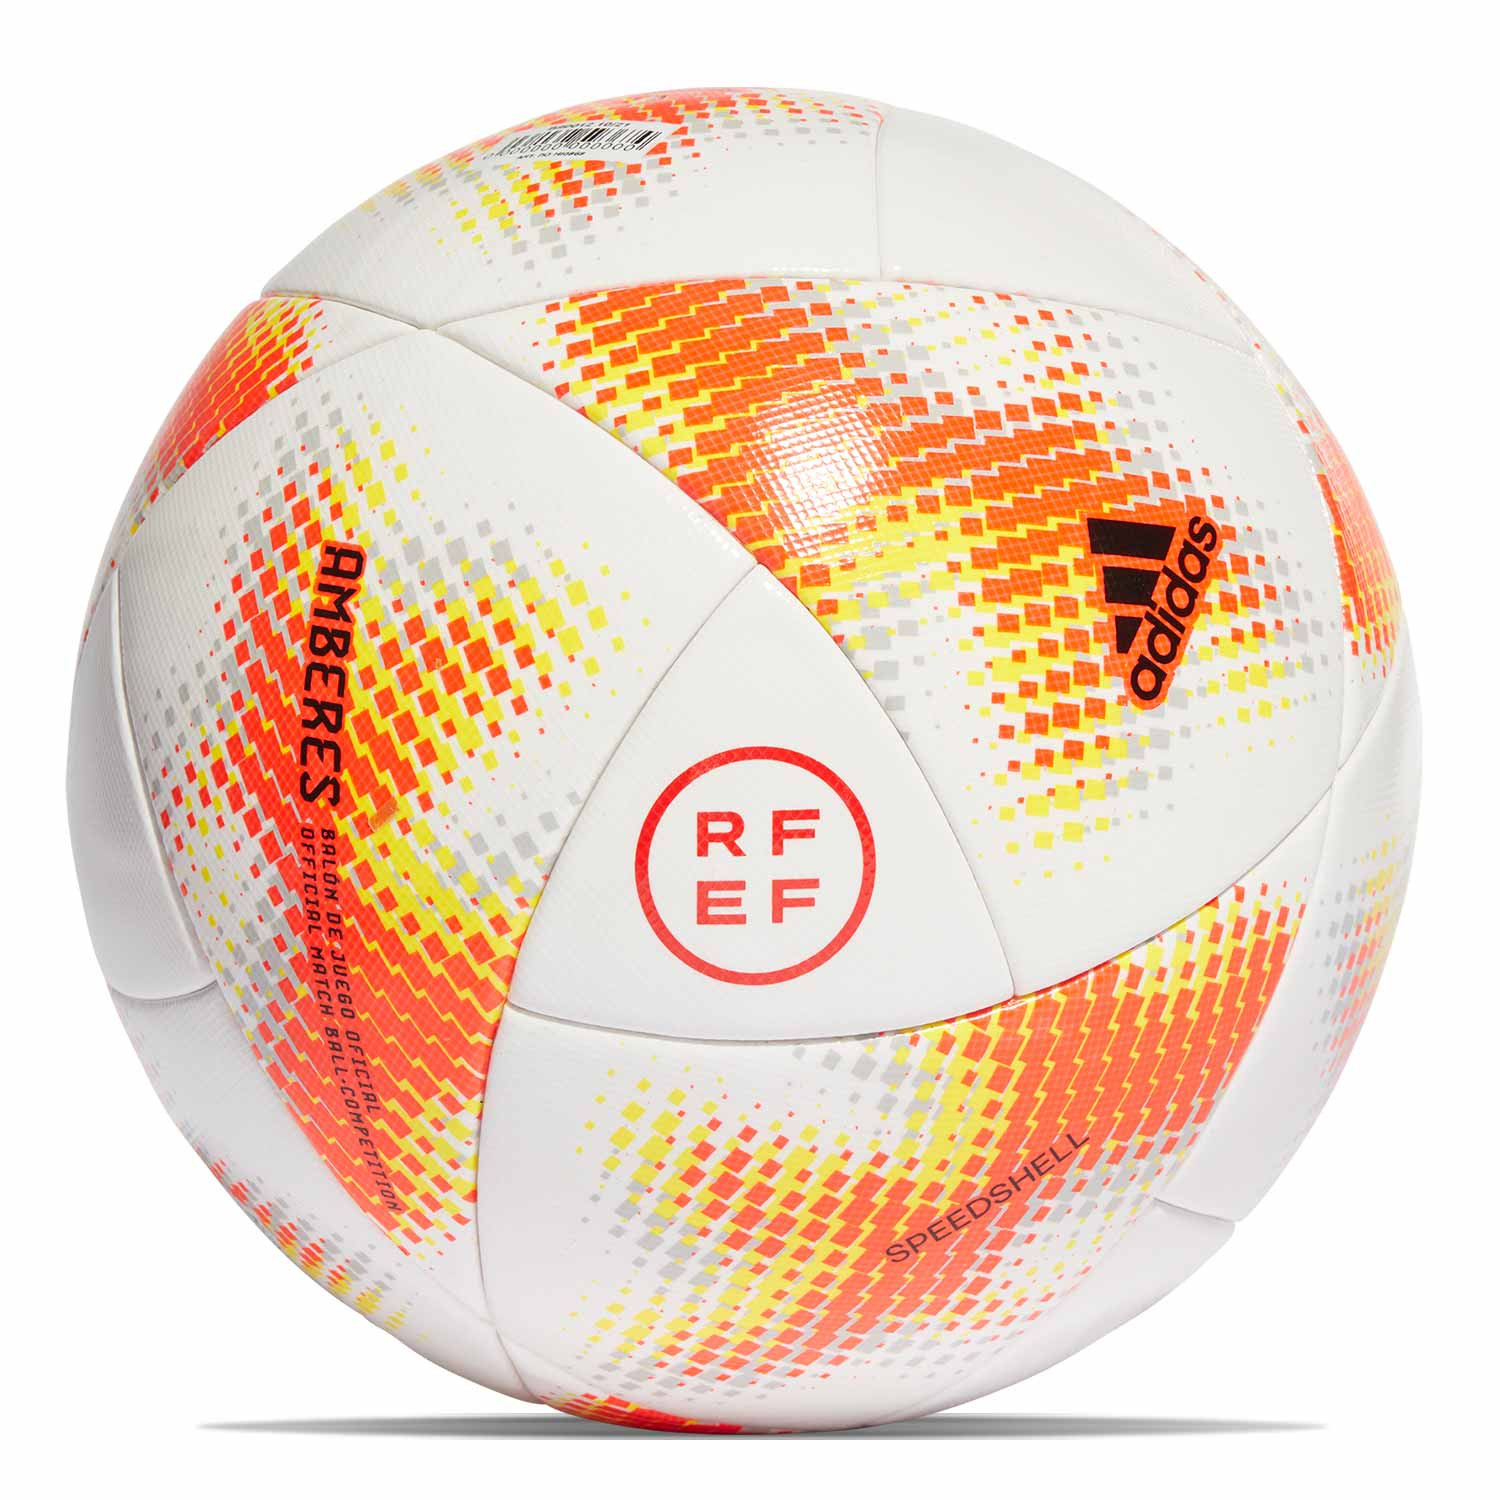 Hazme pueblo travesura Balón adidas RFEF Competition talla 5 blanco y rojo | futbolmania